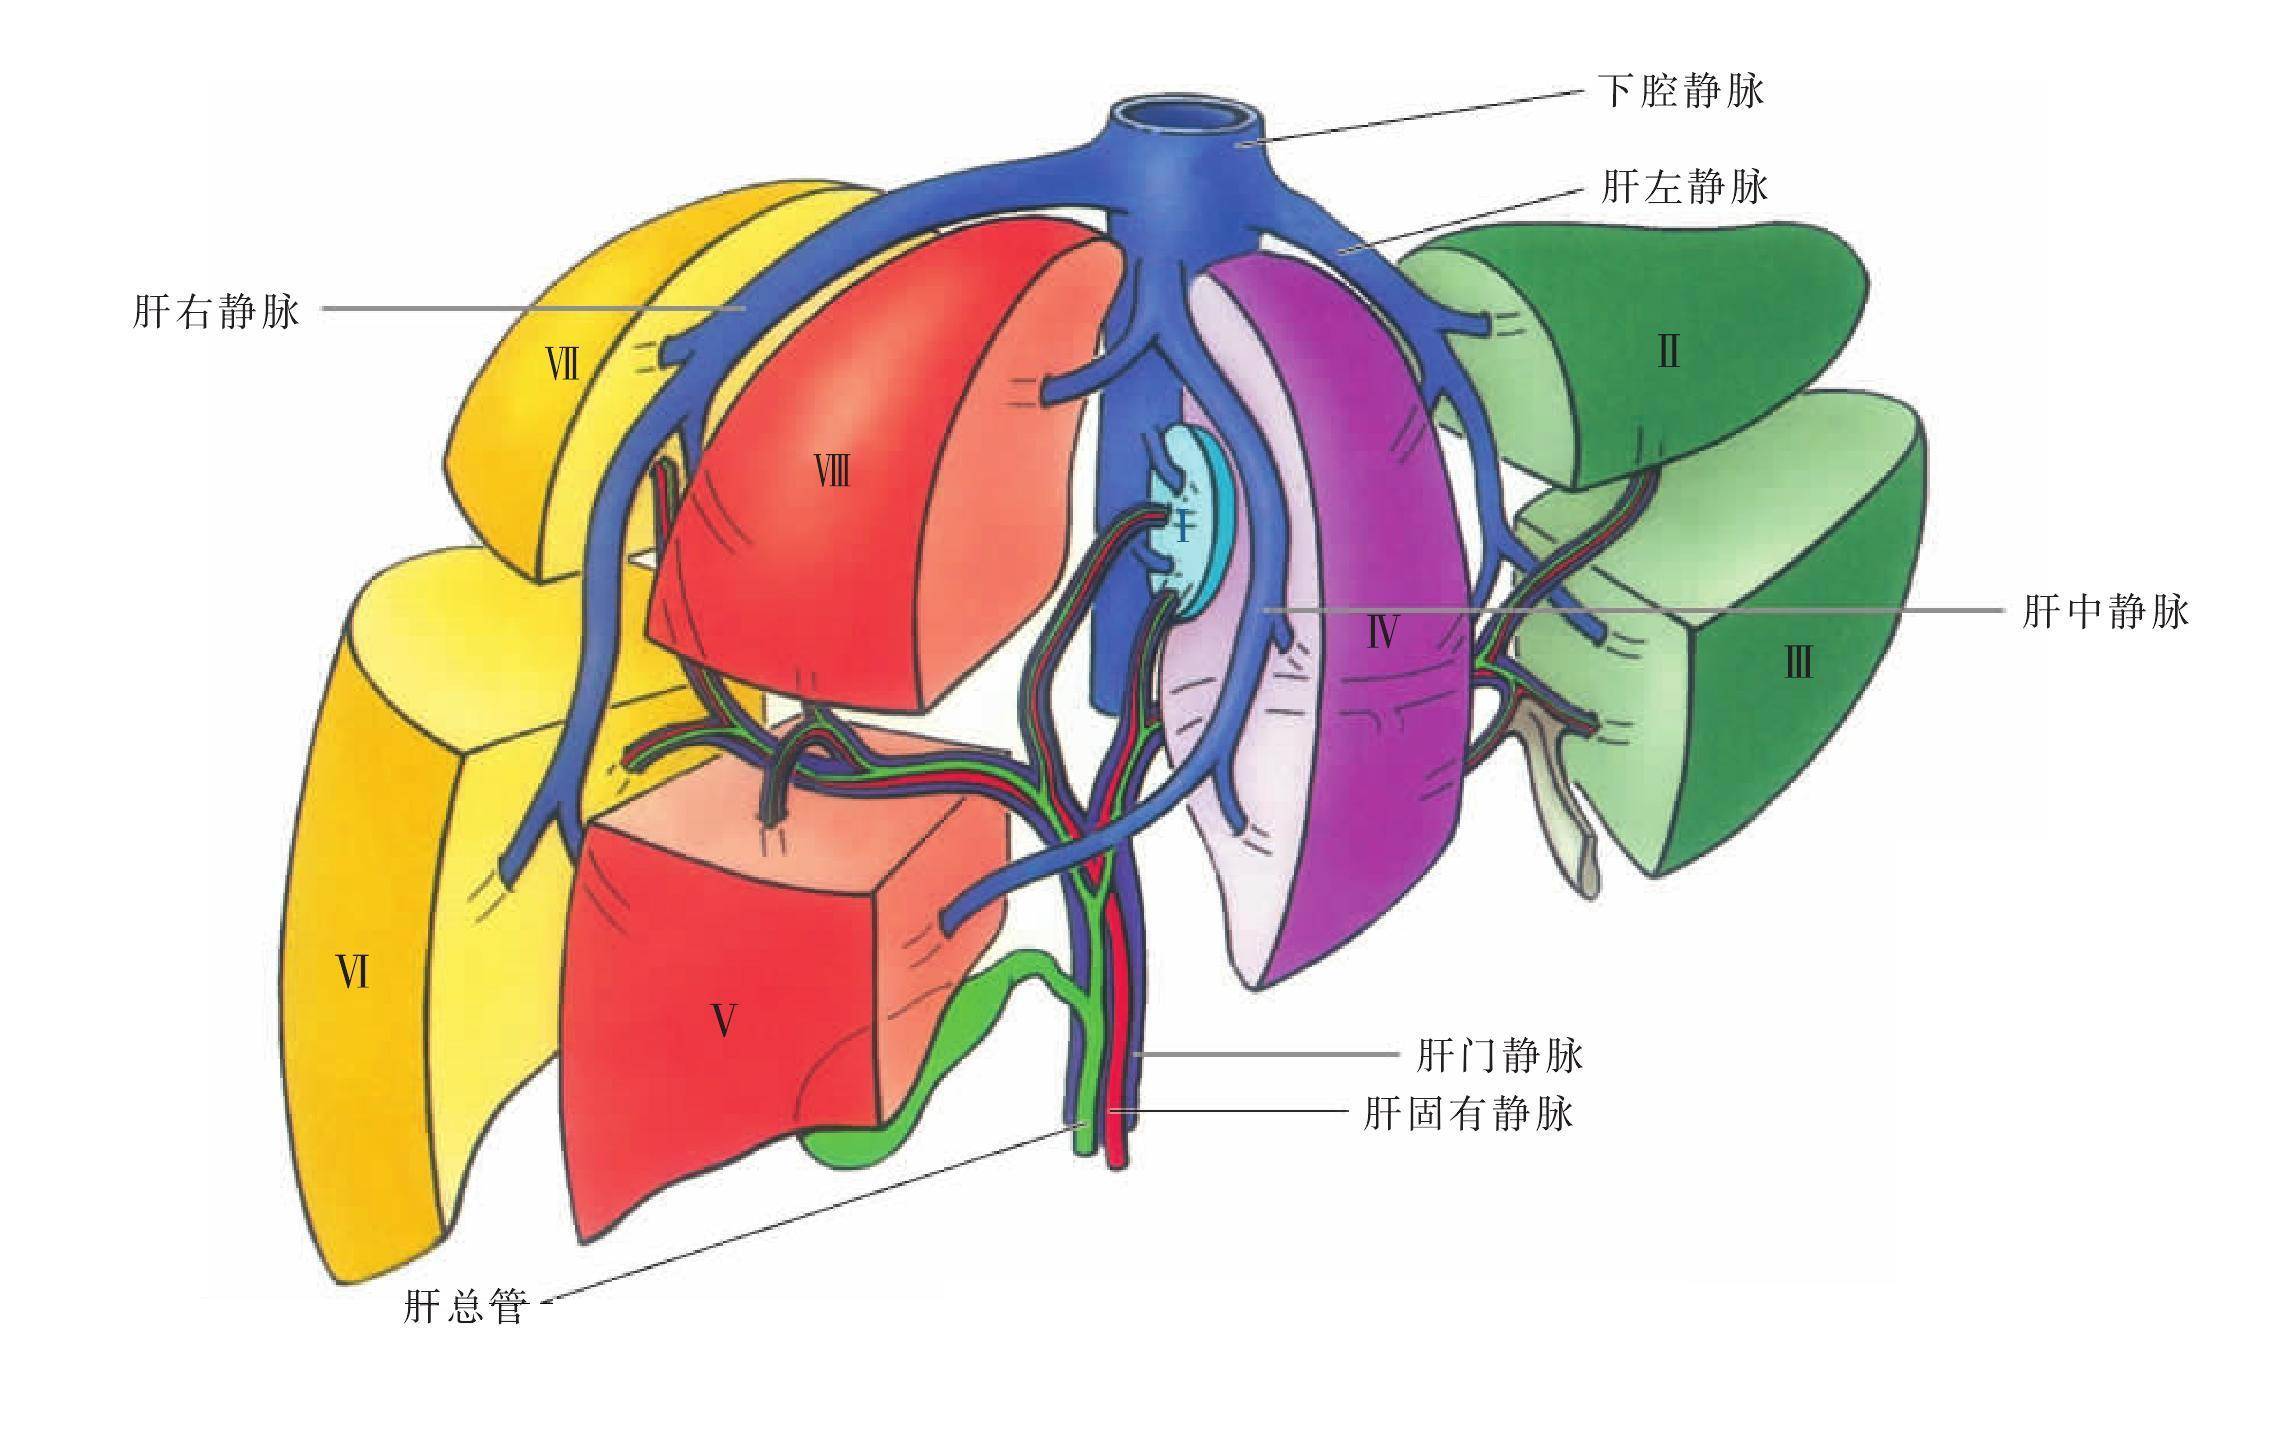 肝脏有独特的双重血液供应系统,即门静脉系统(约占70%)和肝动脉系统